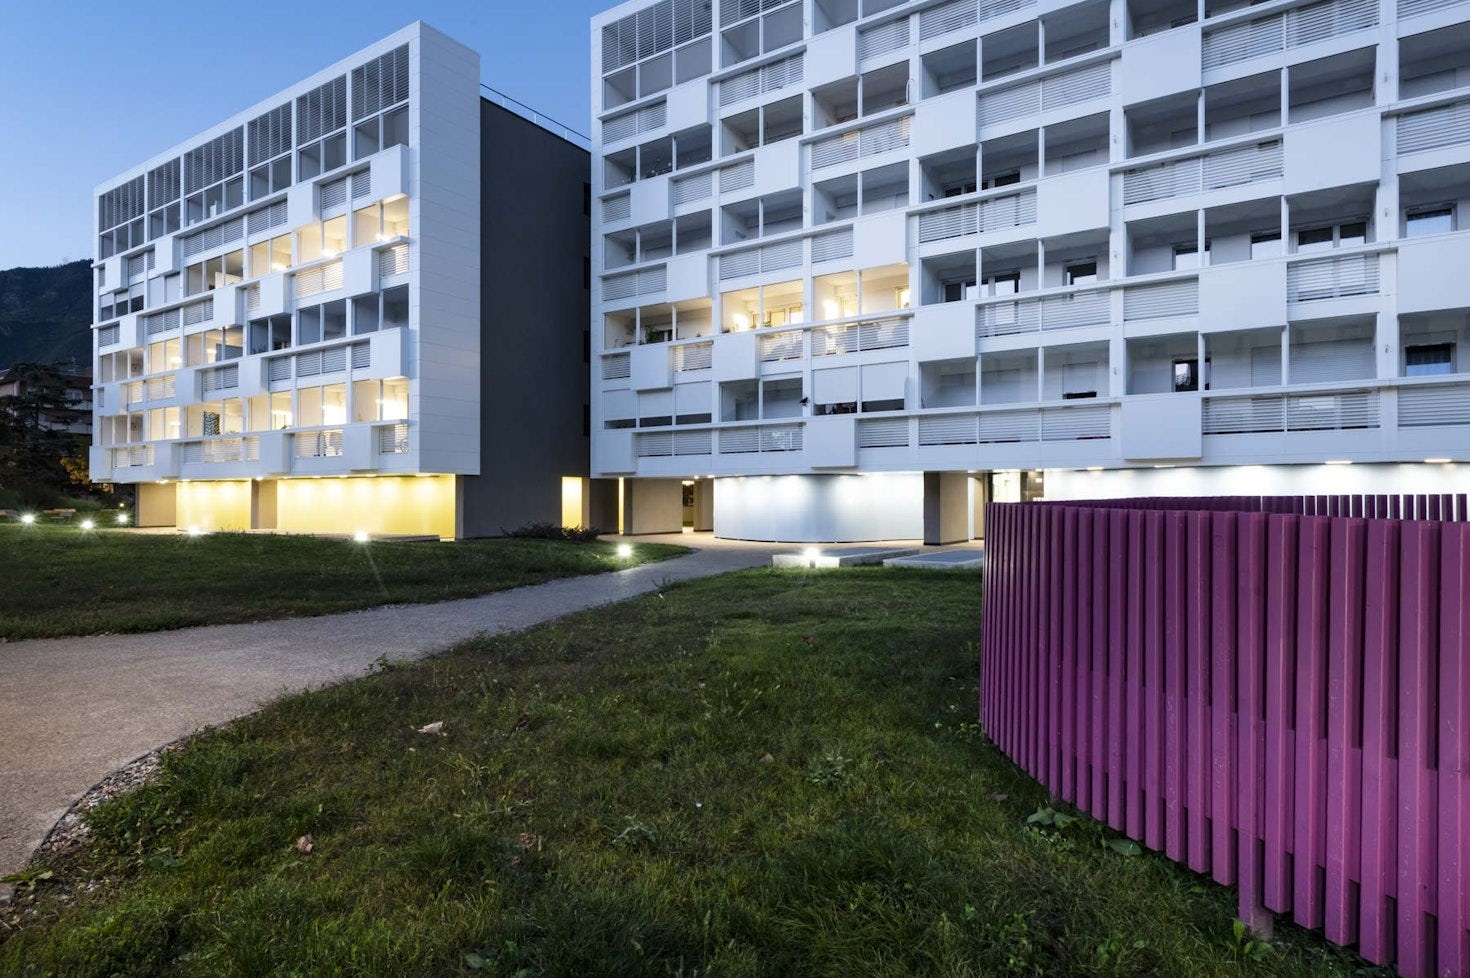 Risanamento dell’edilizia sociale a Bolzano parte del progetto SINFONIA.